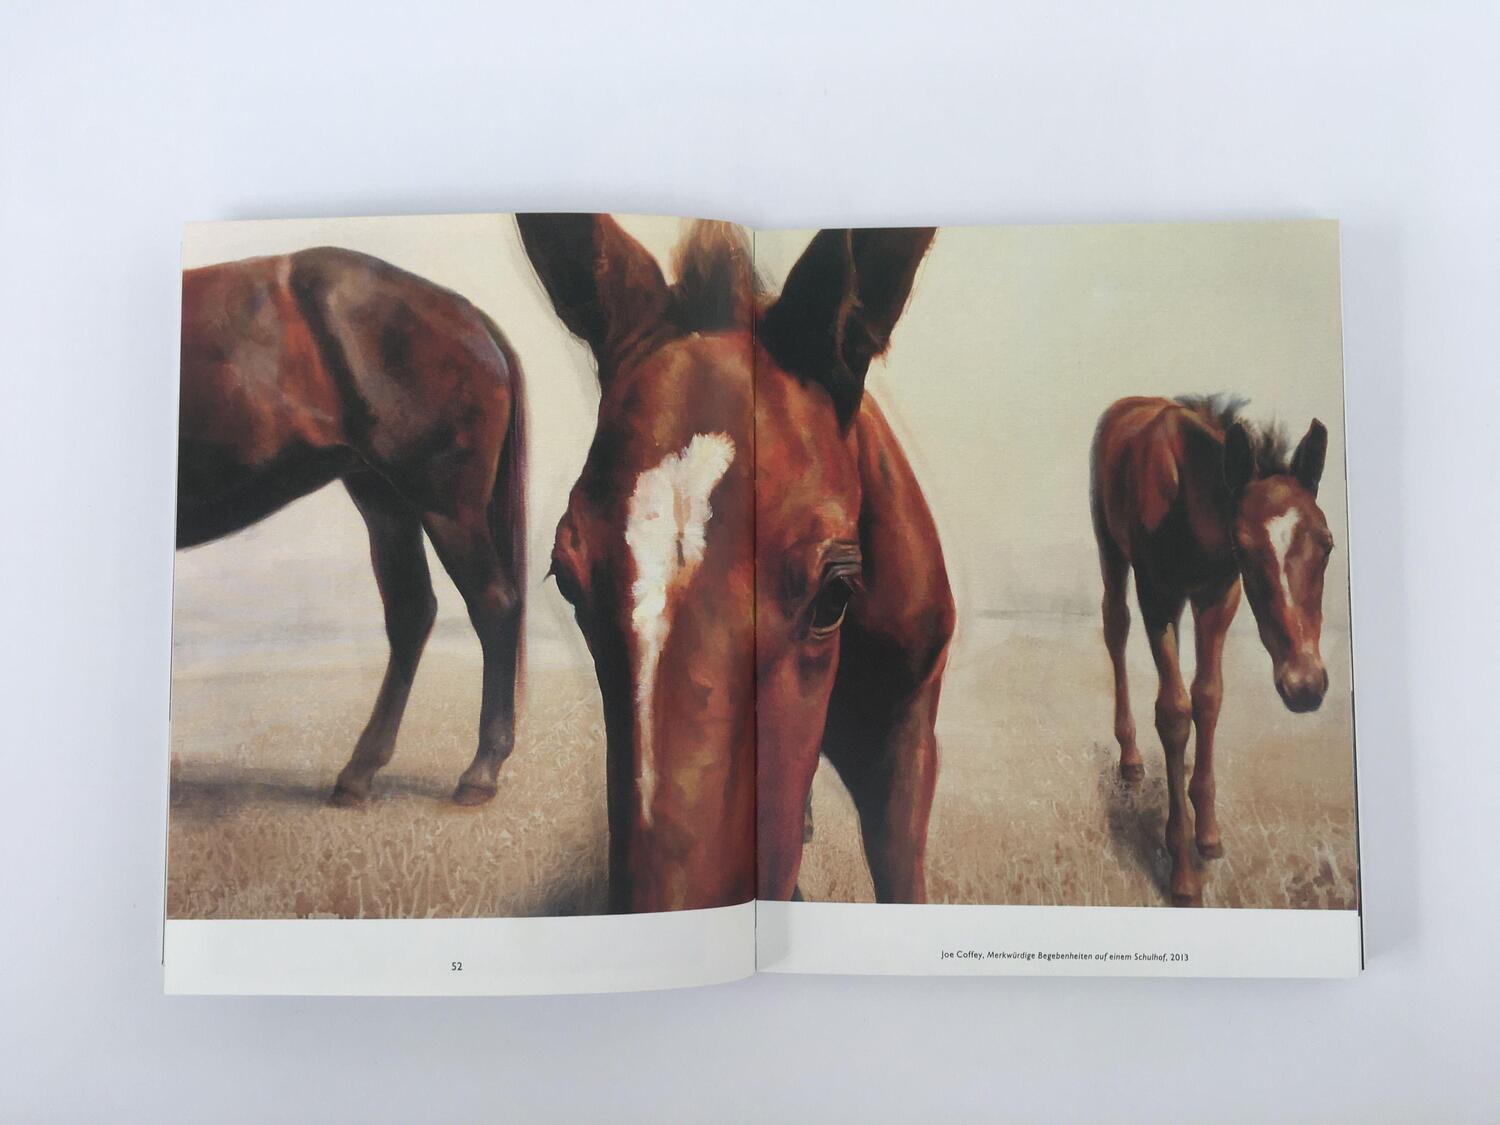 Bild: 9783832199500 | Pferde in der Kunst | Angus Hyland (u. a.) | Taschenbuch | Deutsch